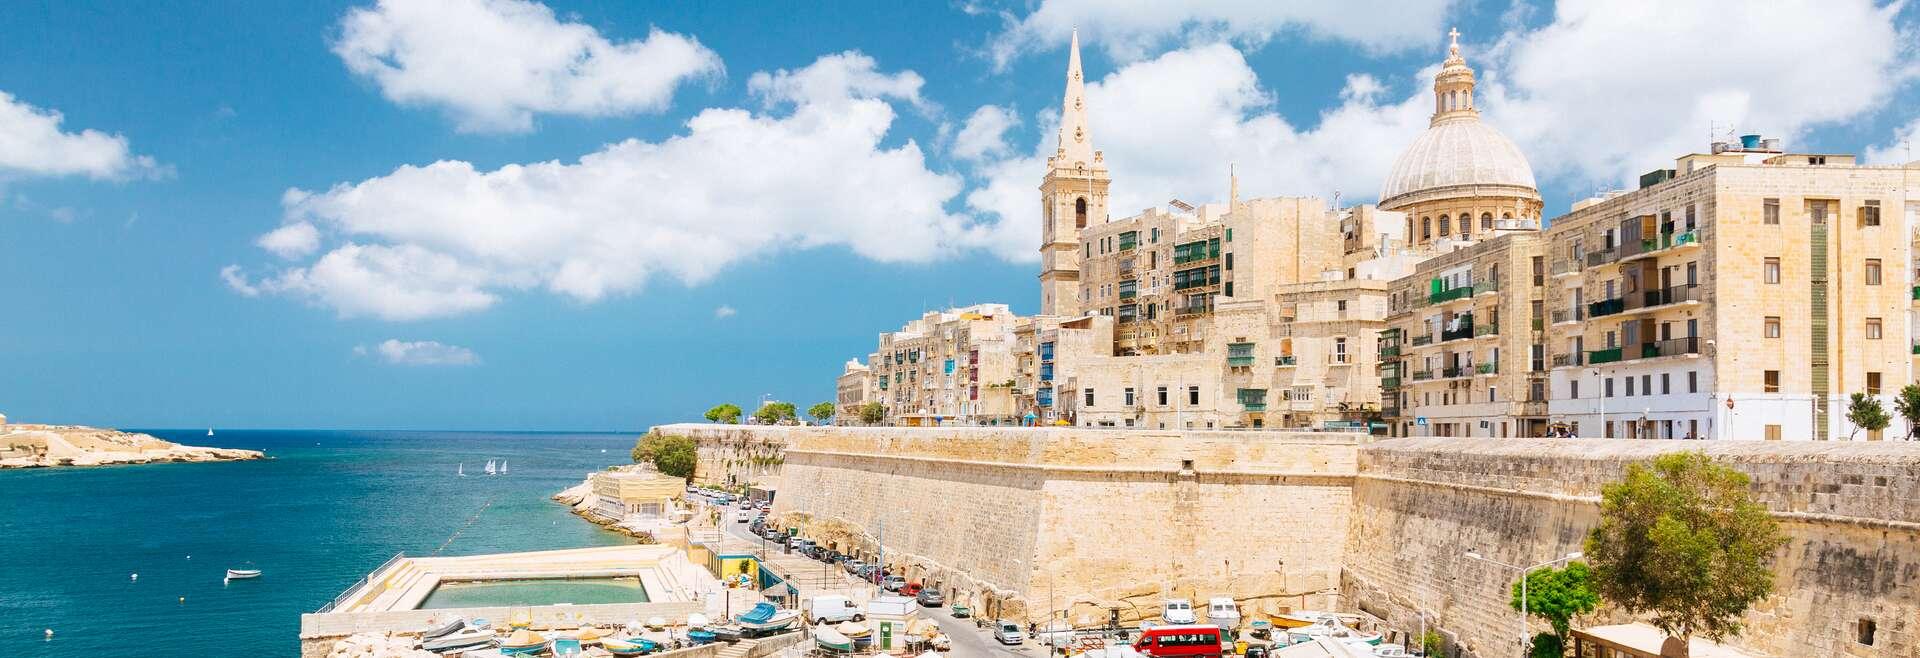 Sprachaufenthalt Malta, St. Julians, Stadtbucht